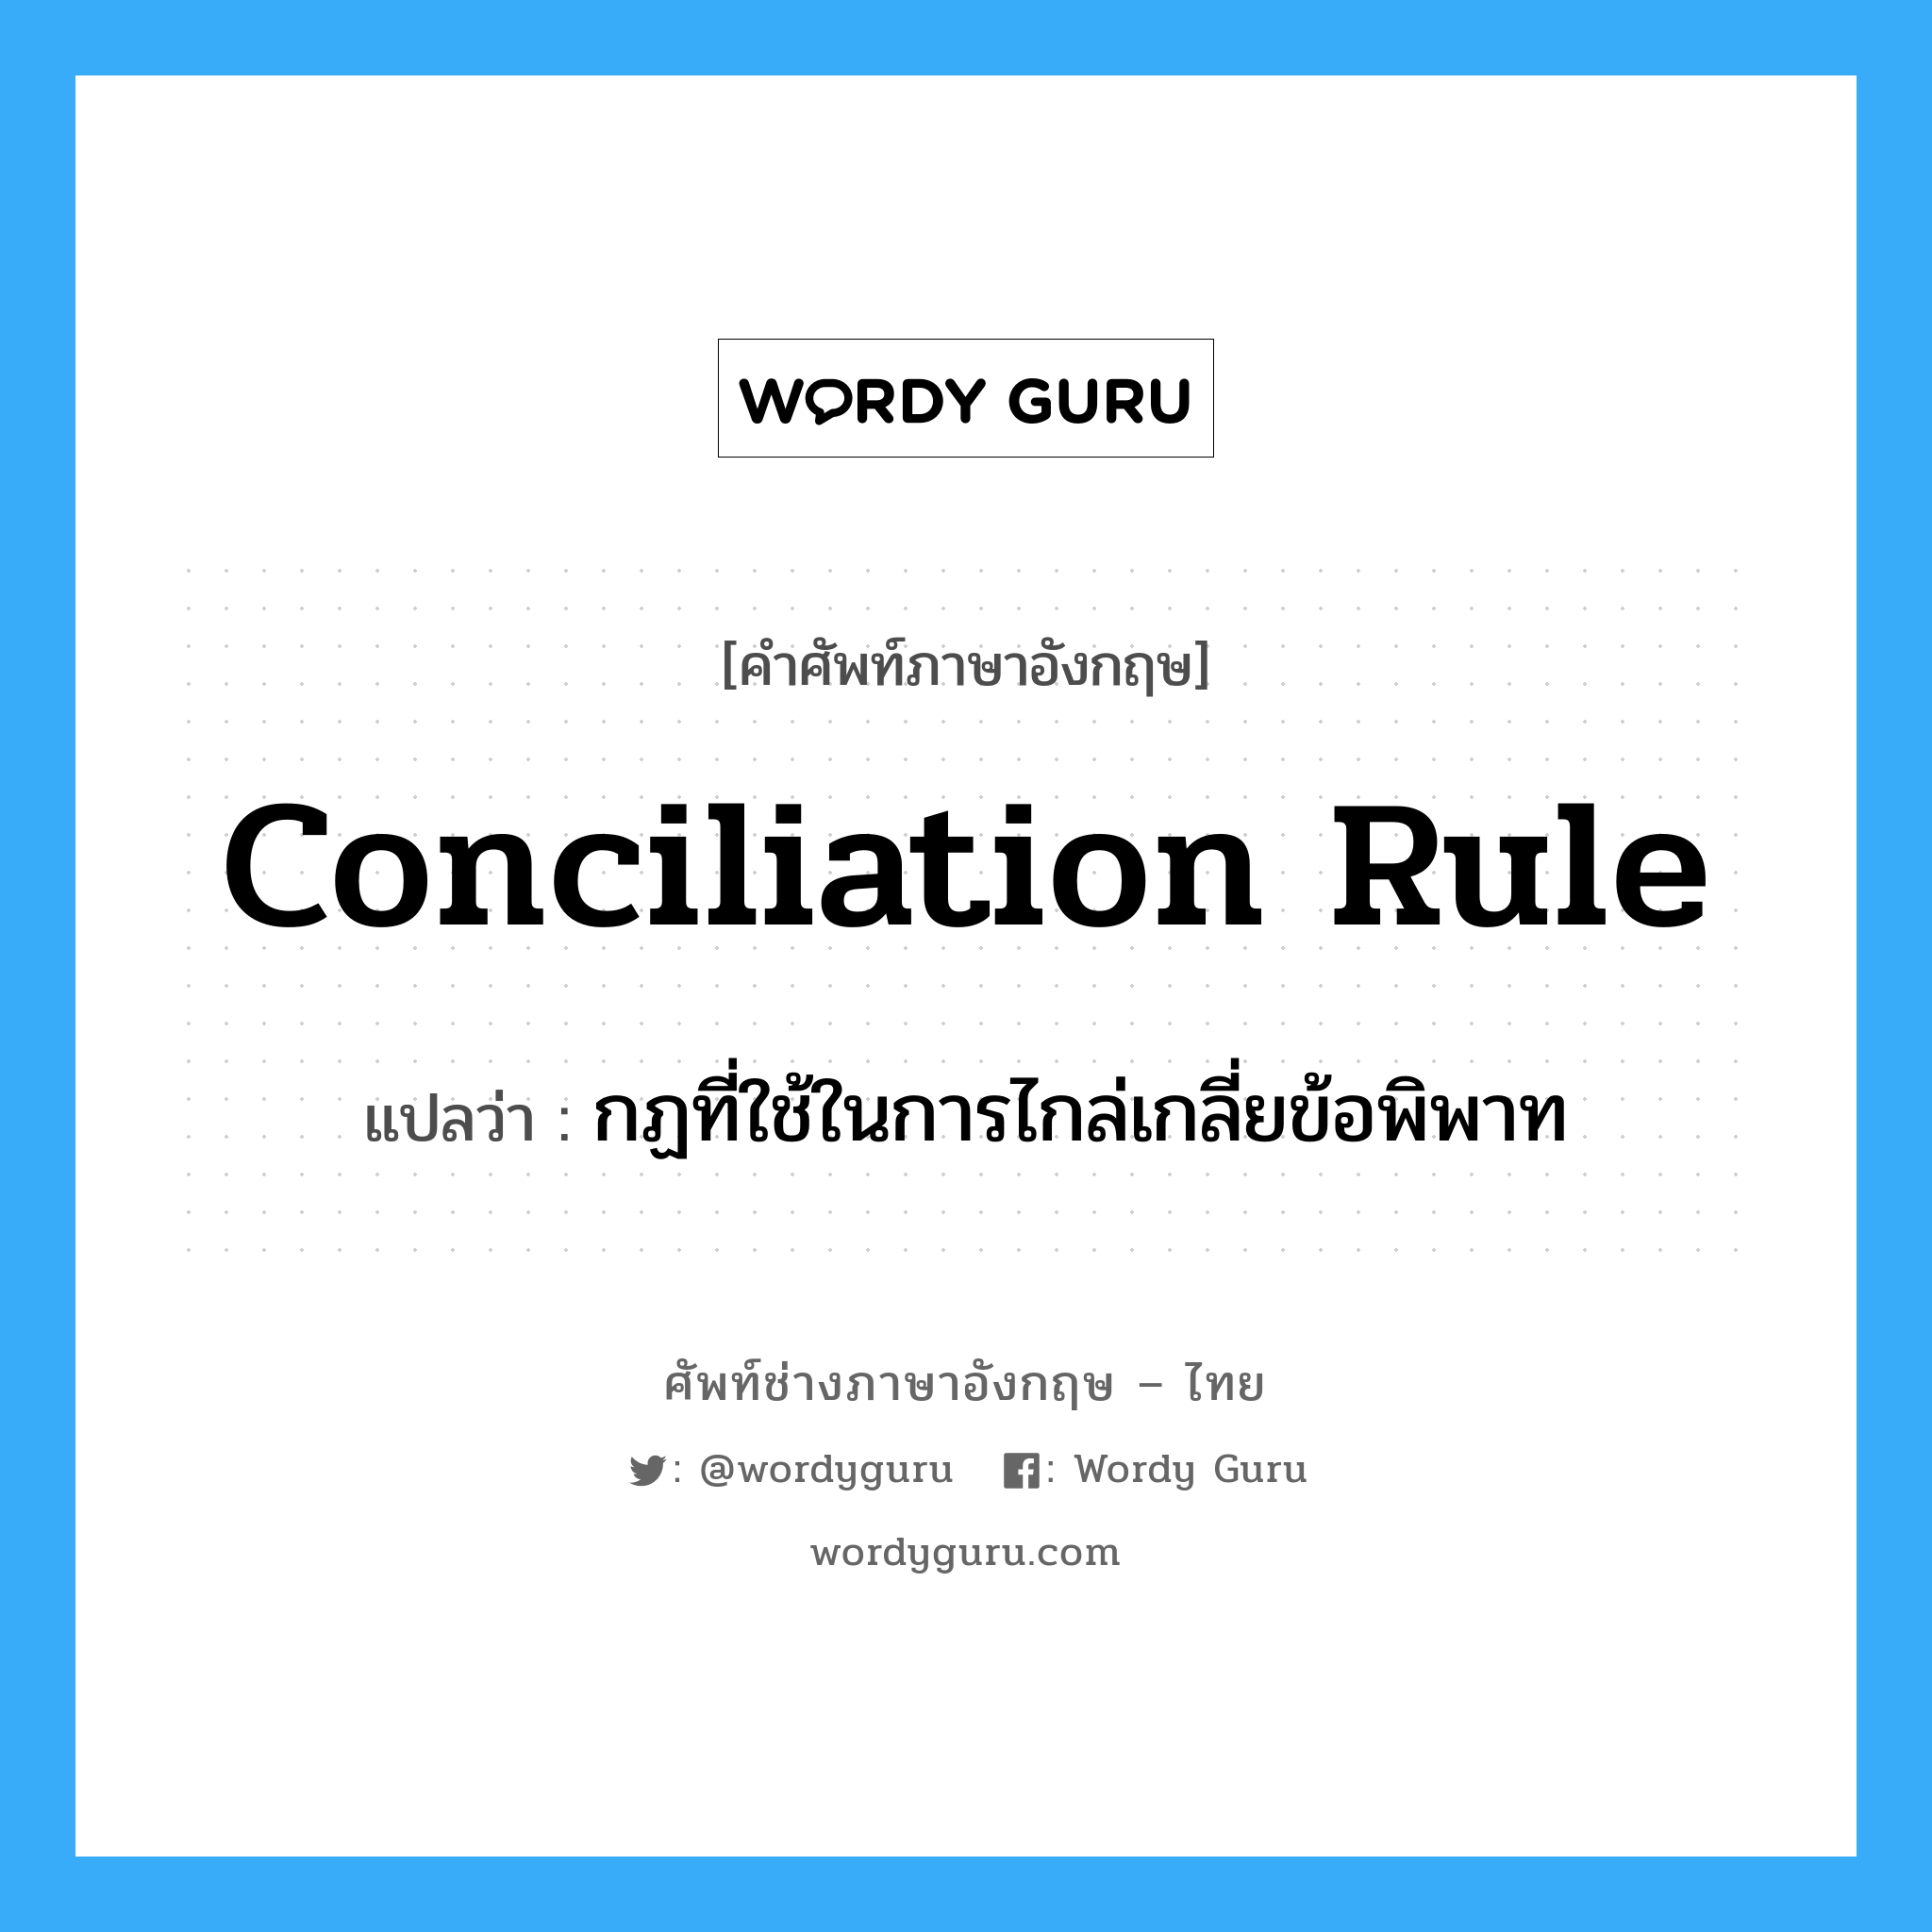 กฏที่ใช้ในการไกล่เกลี่ยข้อพิพาท ภาษาอังกฤษ?, คำศัพท์ช่างภาษาอังกฤษ - ไทย กฏที่ใช้ในการไกล่เกลี่ยข้อพิพาท คำศัพท์ภาษาอังกฤษ กฏที่ใช้ในการไกล่เกลี่ยข้อพิพาท แปลว่า Conciliation Rule